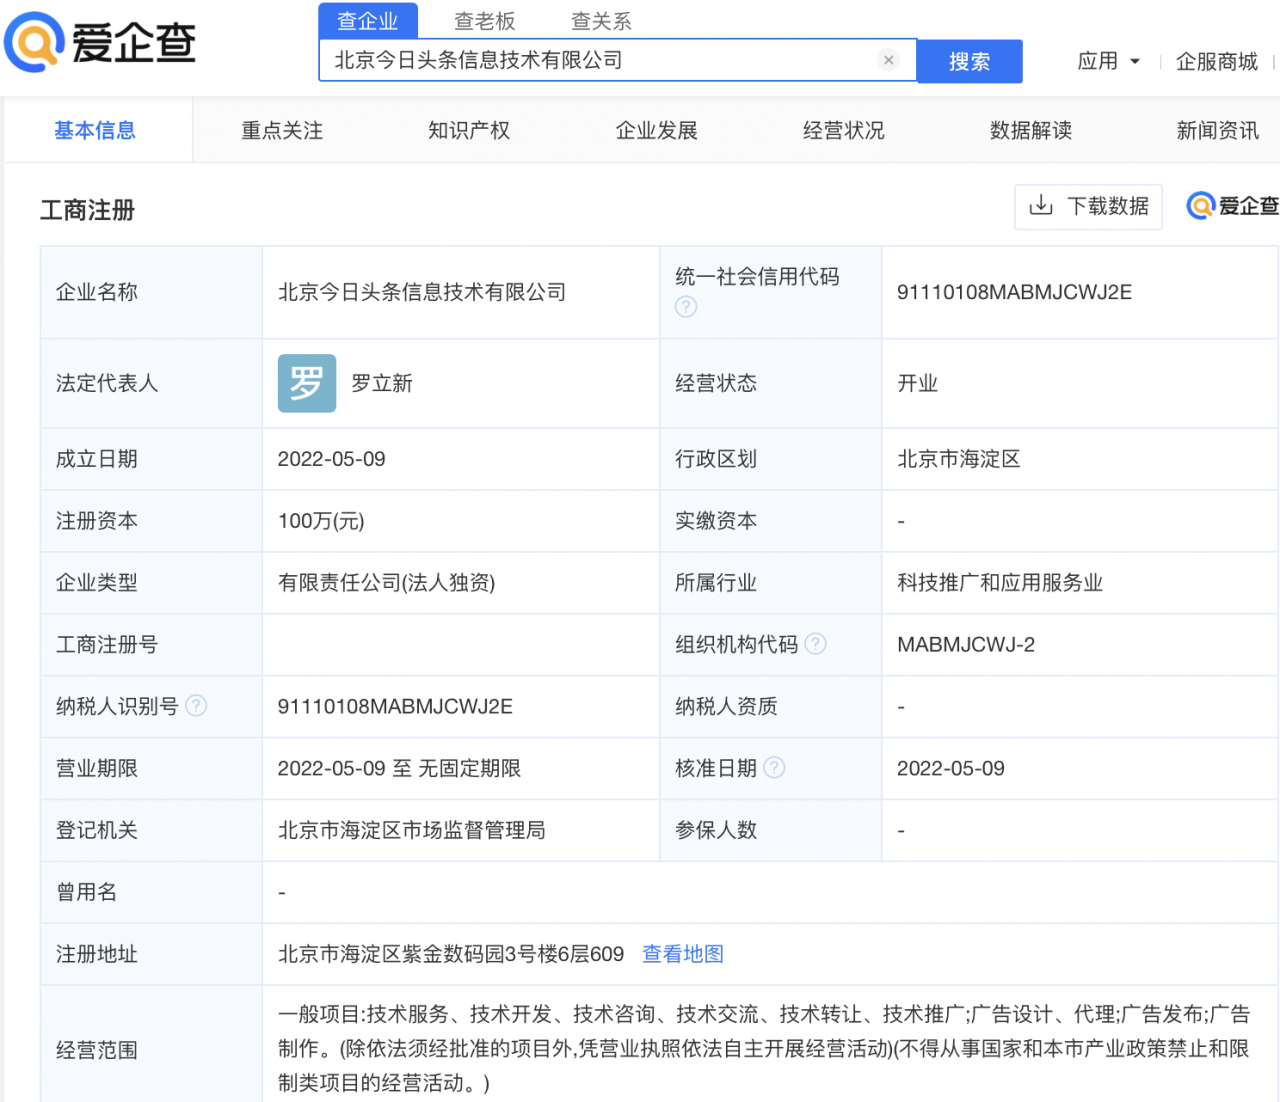 爱企查显示抖音集团于北京成立今日头条新公司